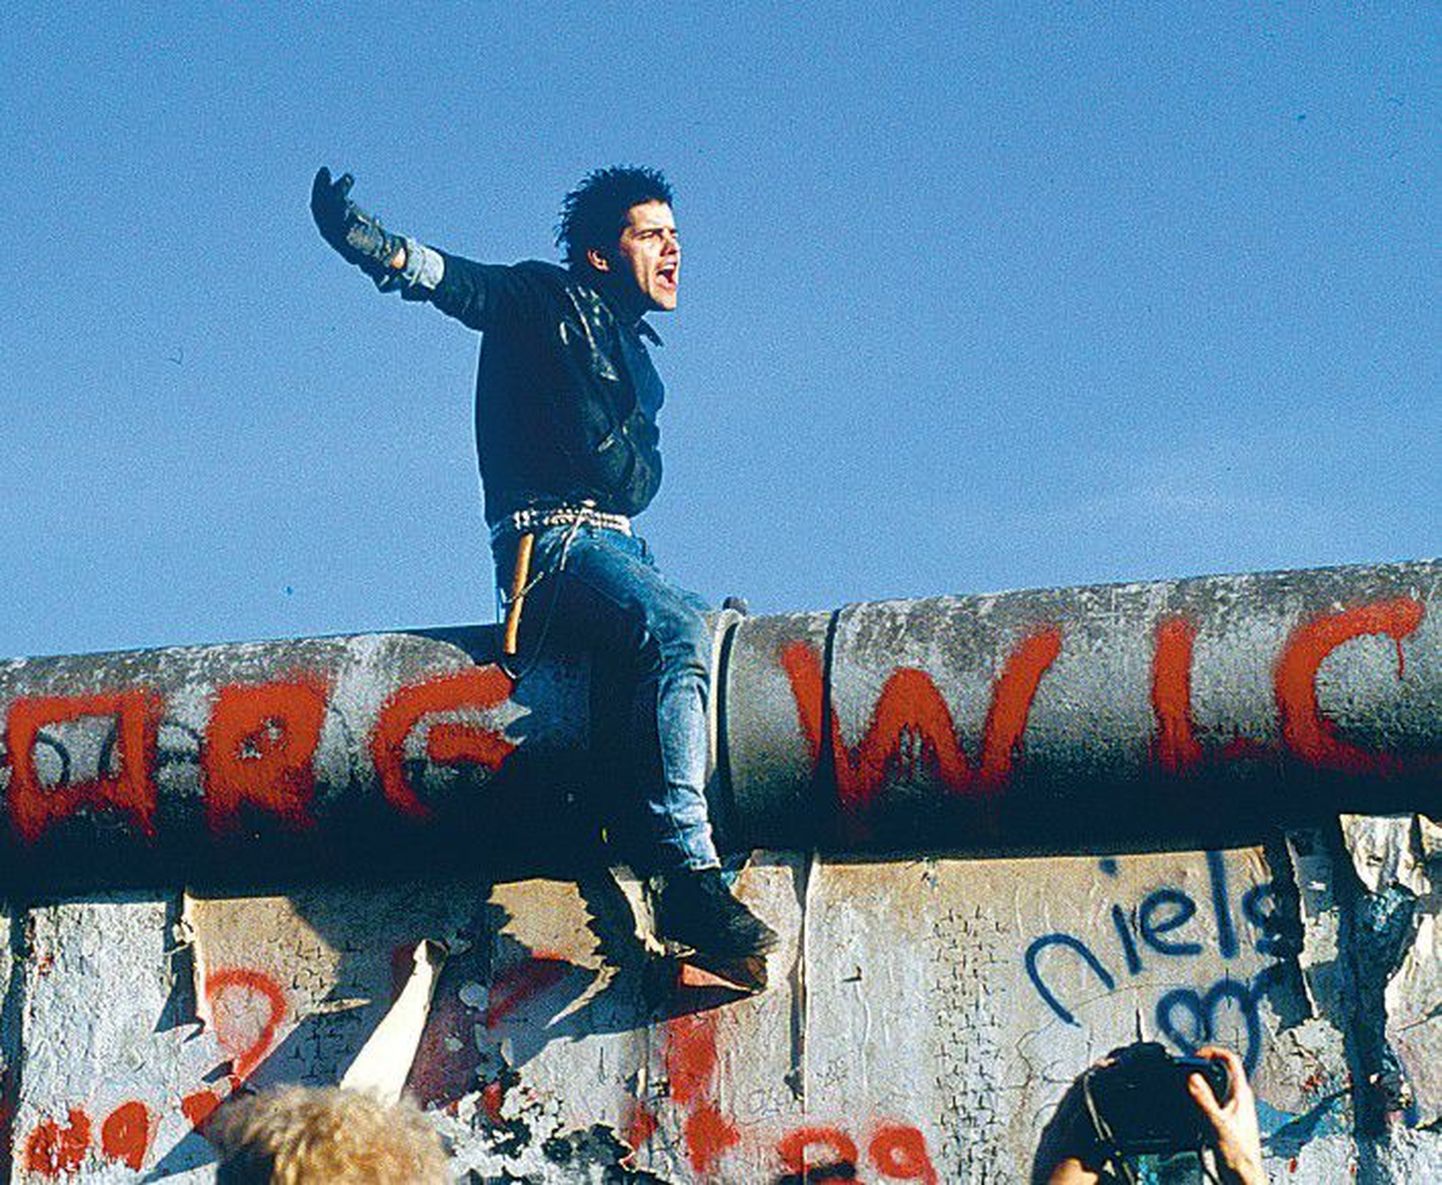 Прийт Весилинд «Падение Берлинской стены» (1989, скадрировано).